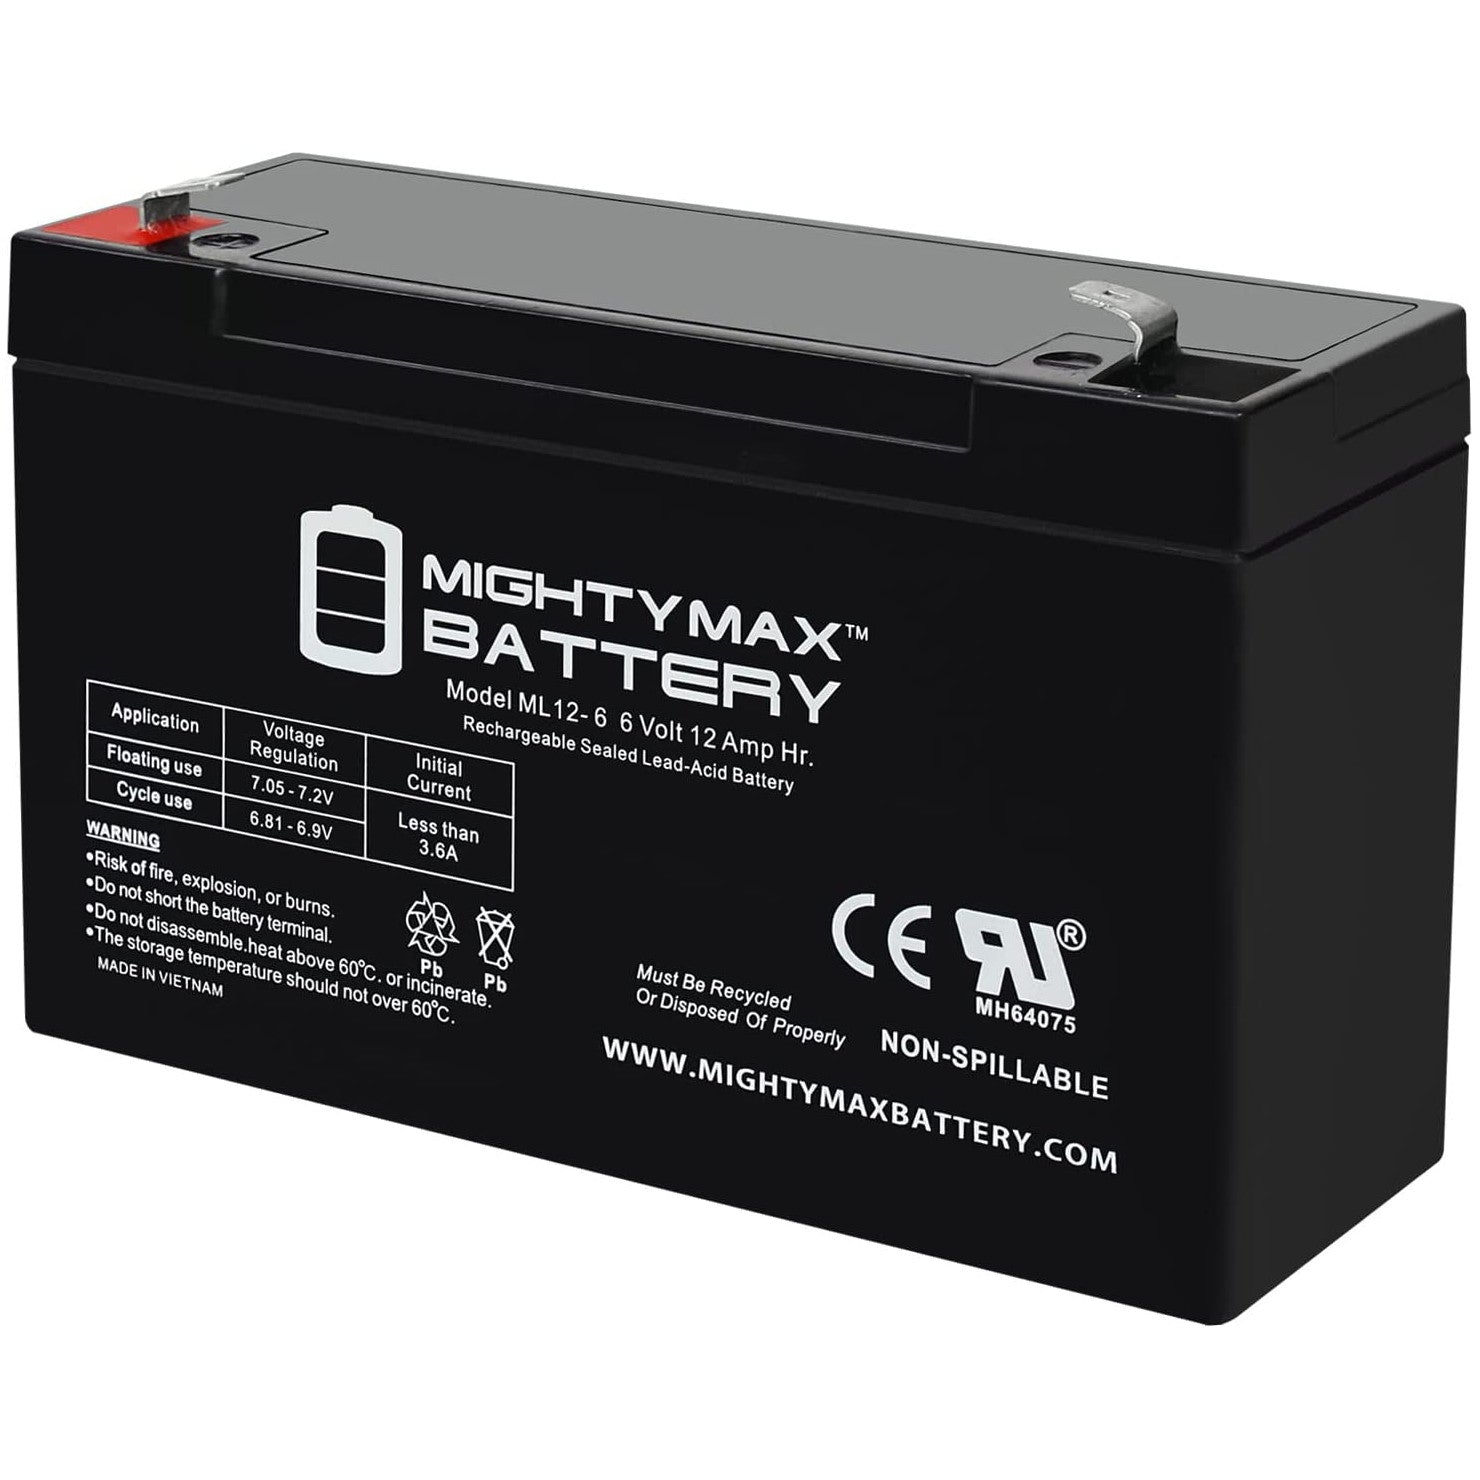 Rechargeable Battery 6 Volt 12 Amp Hr